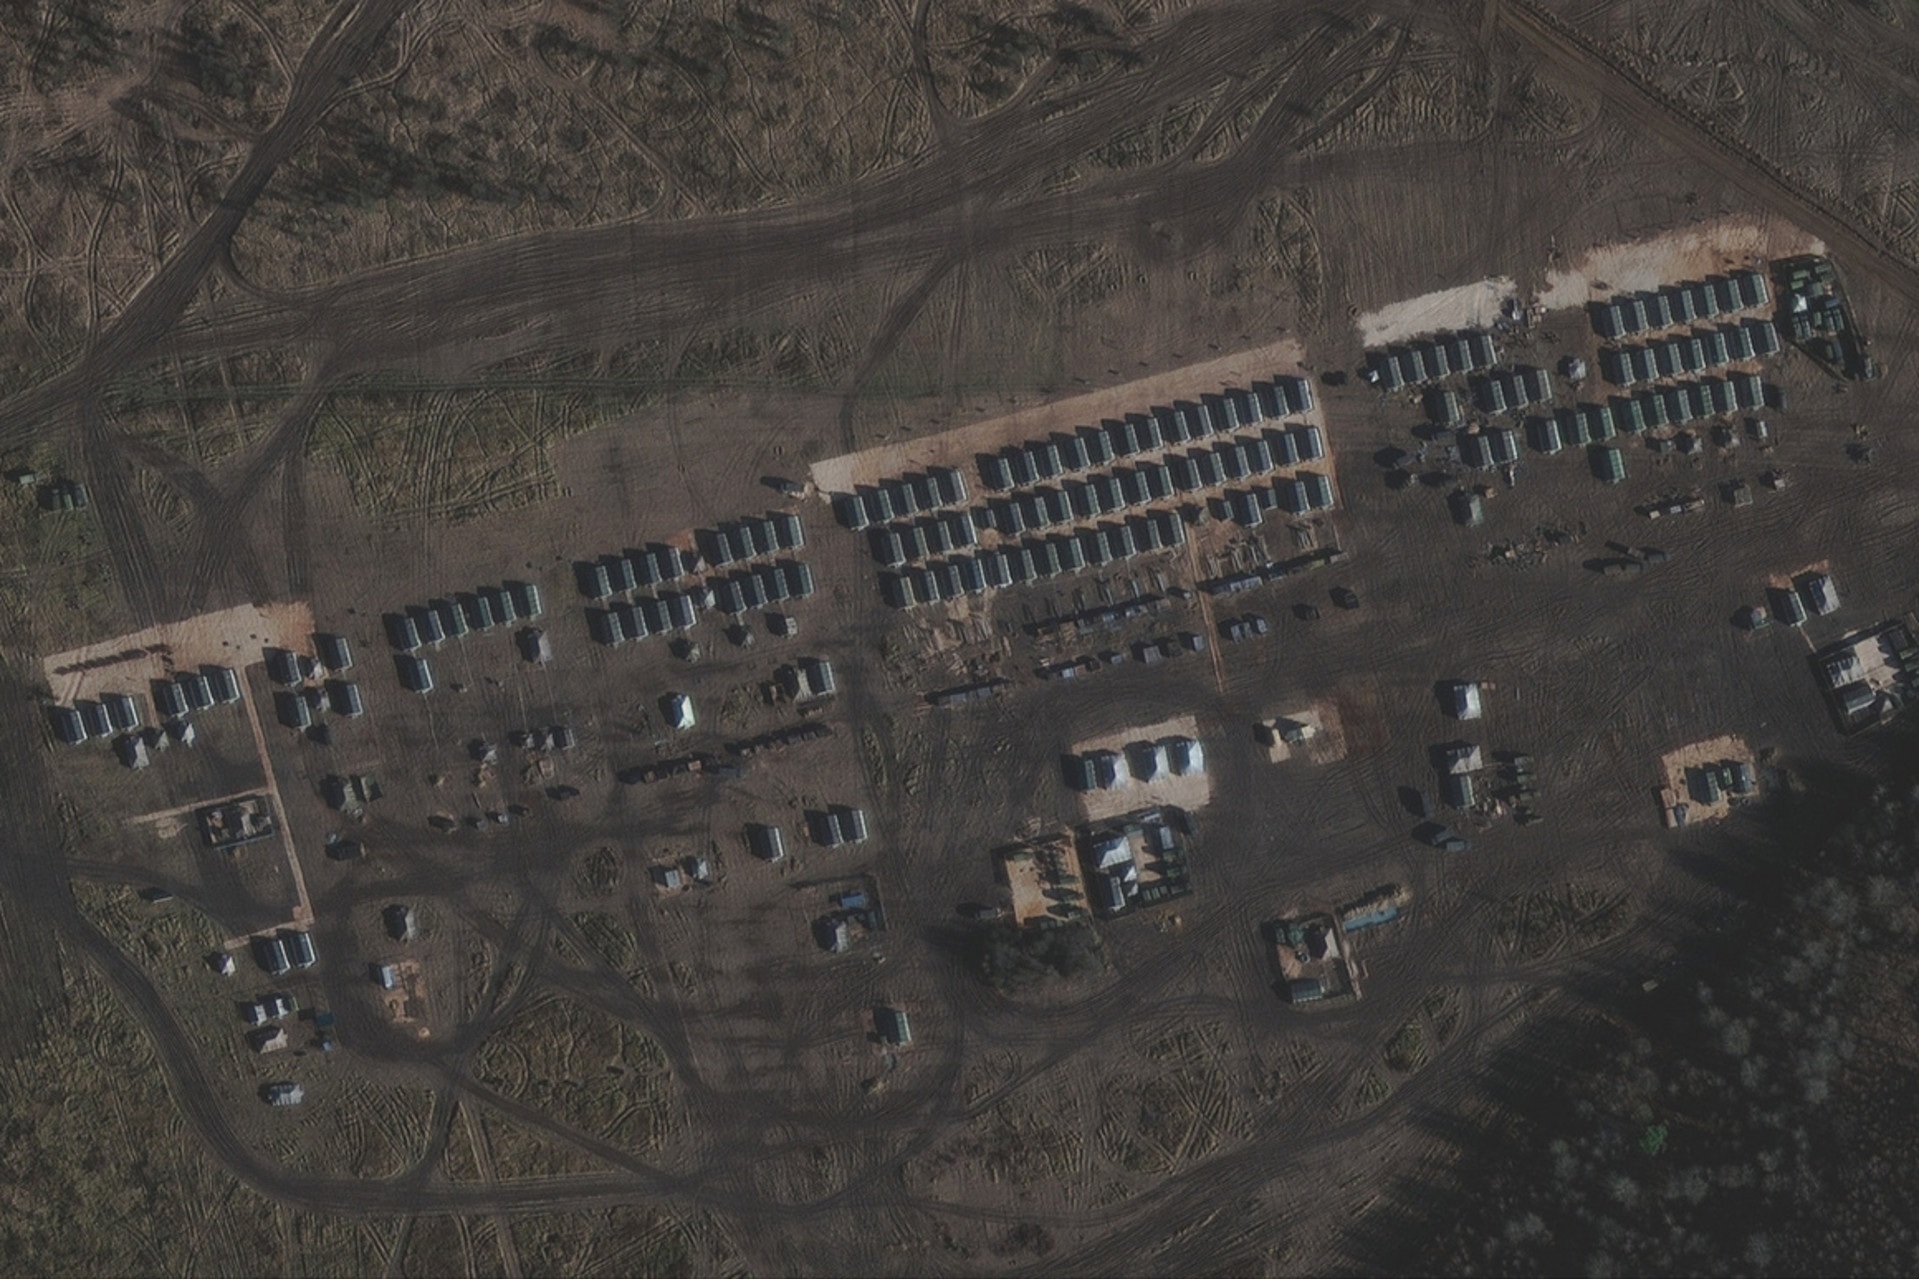 На спутниковых снимках видны воинские палатки и административная территория.